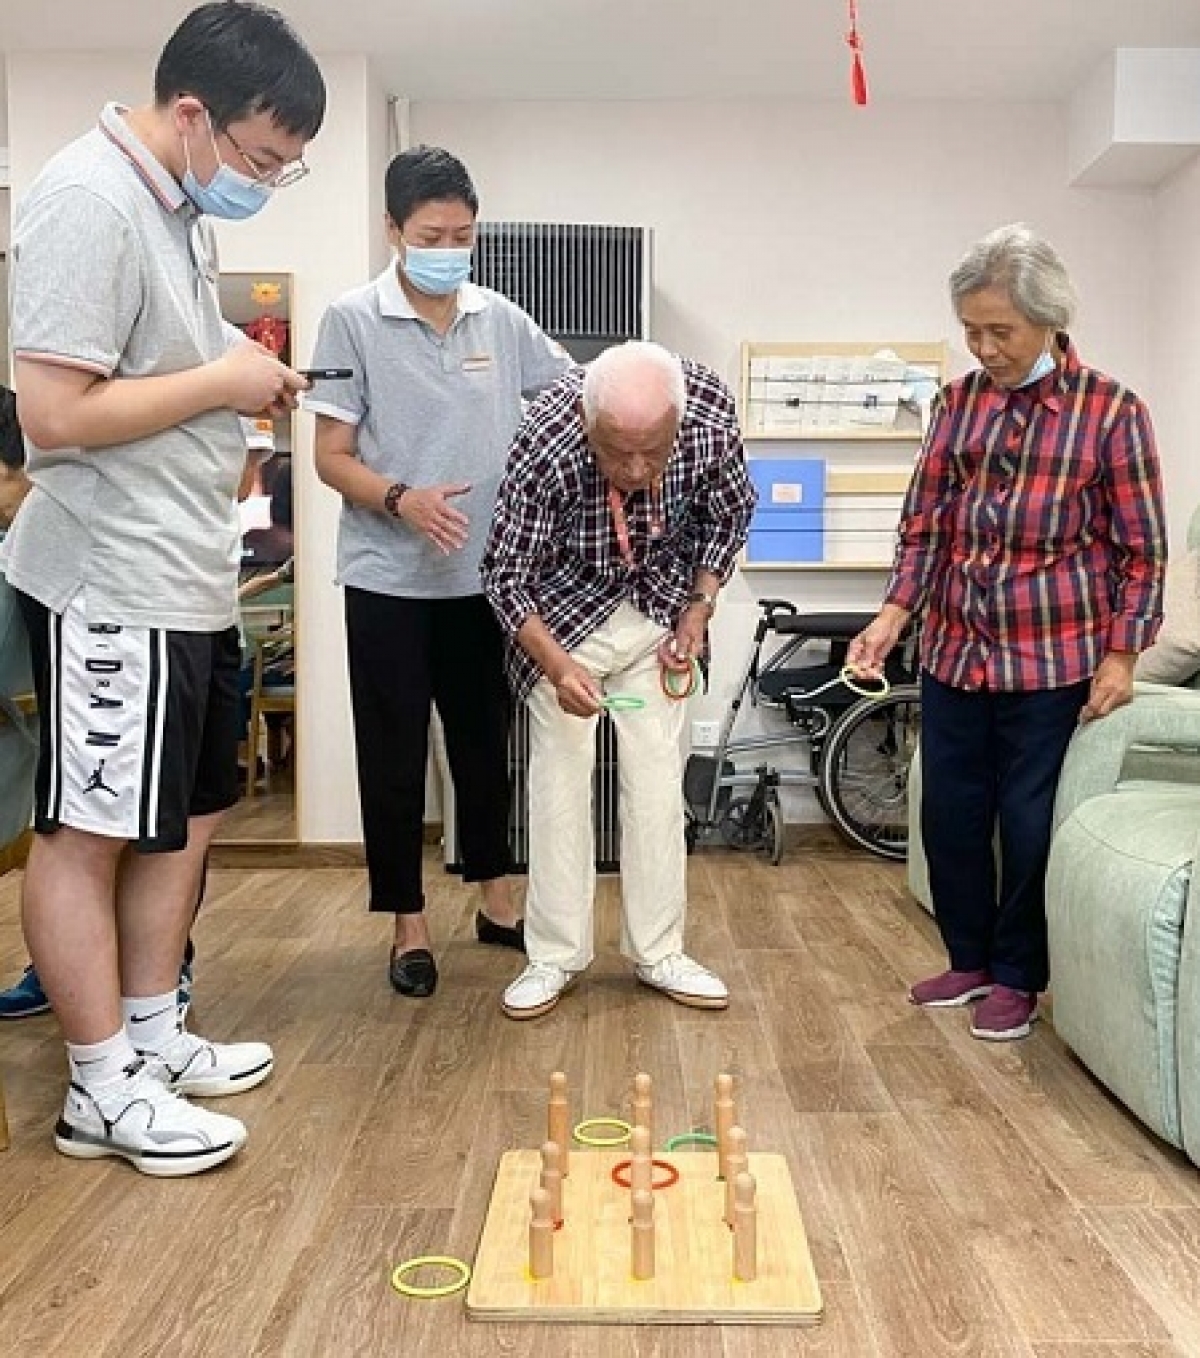 Zhong Zhixiang (giữa) chơi trò ném vòng tại Trung tâm chăm sóc người cao tuổi tích hợp Huayang, Thượng Hải, ngày 20 tháng 8 năm 2021. Ảnh: Sixthtone